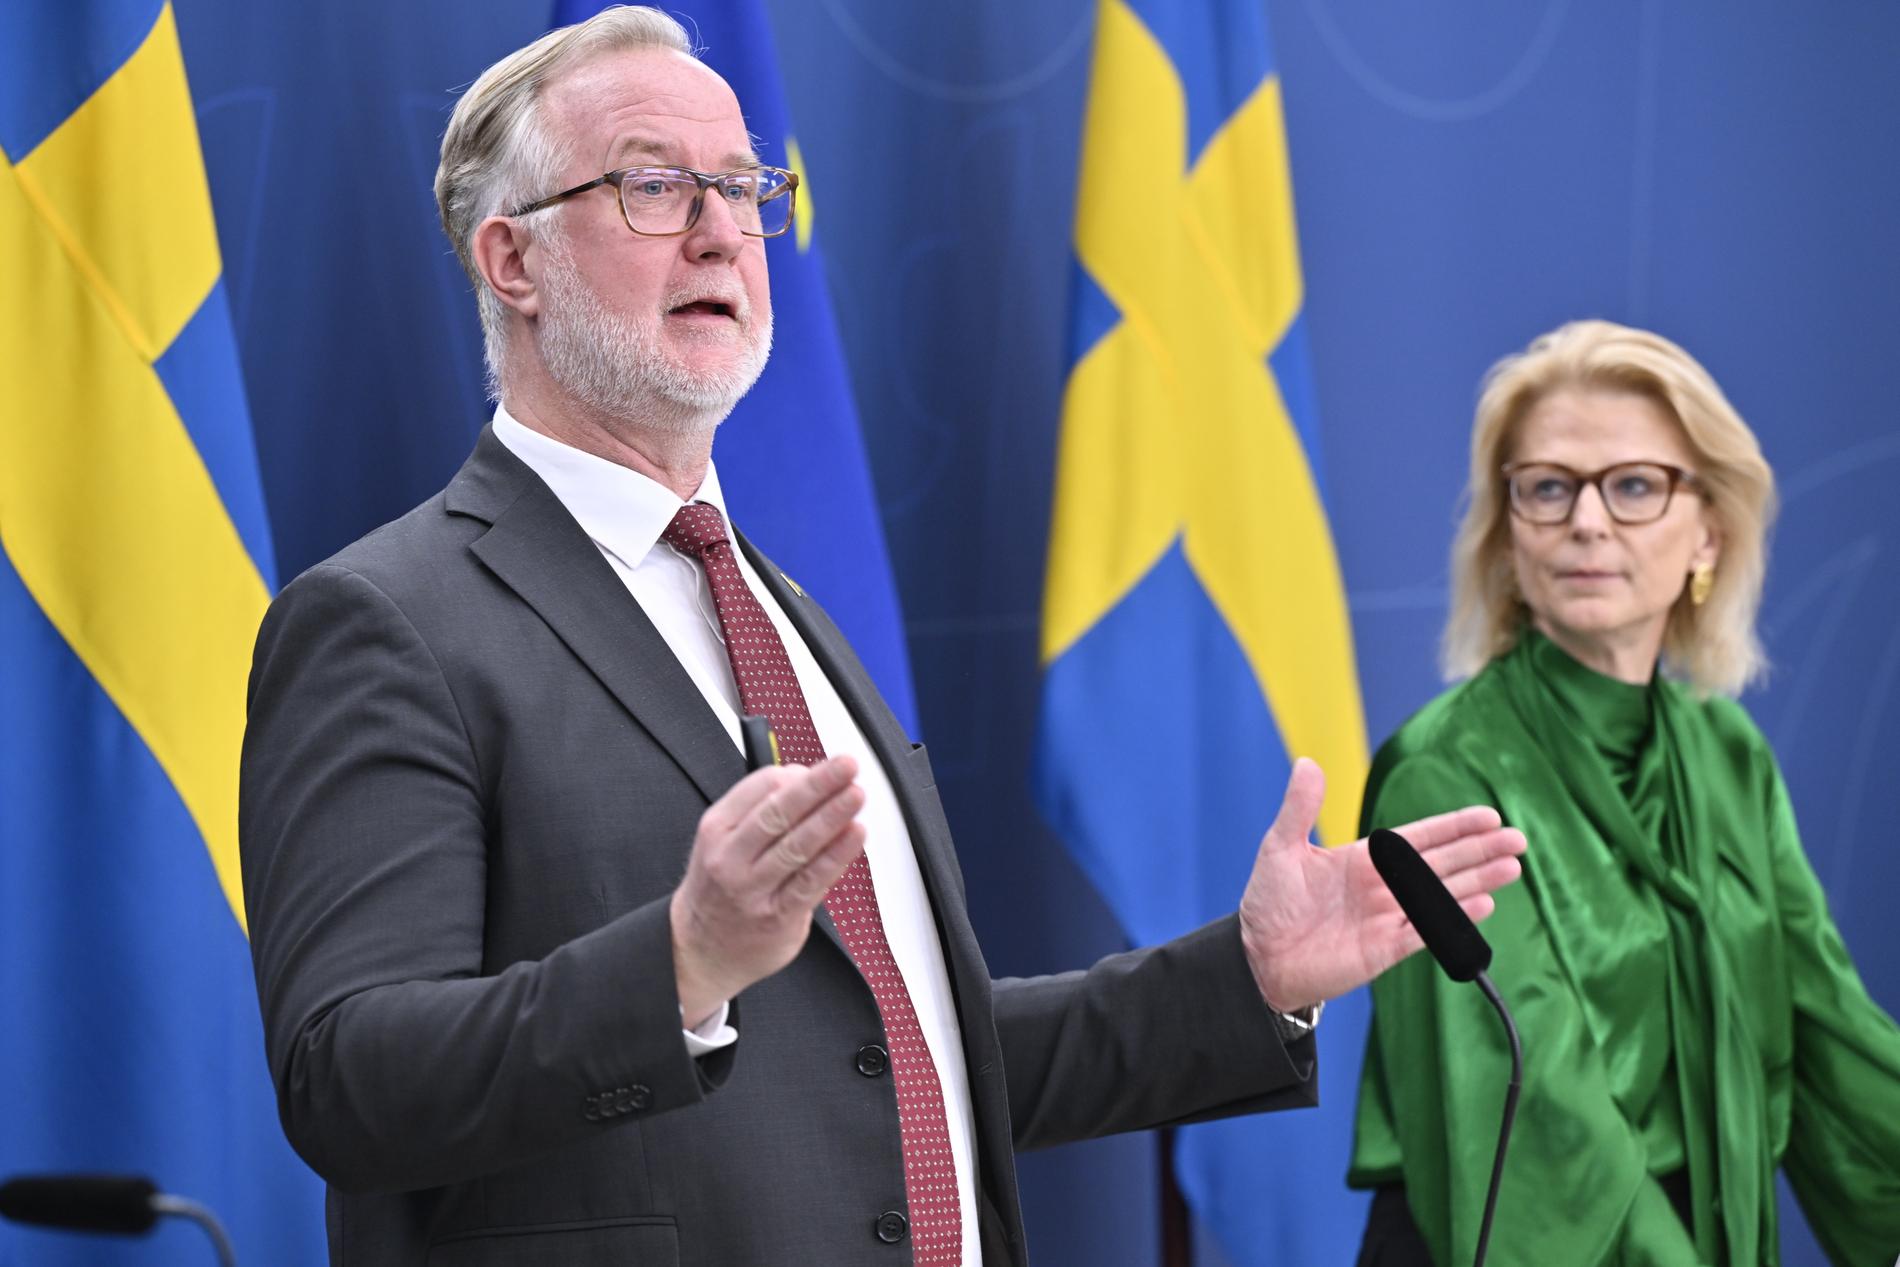 Arbetsmarknadsminister Johan Pehrson (L) och finansminister Elisabeth Svantesson (M) under pressträffen där reformering av arbetslöshetsförsäkringen presenteras.